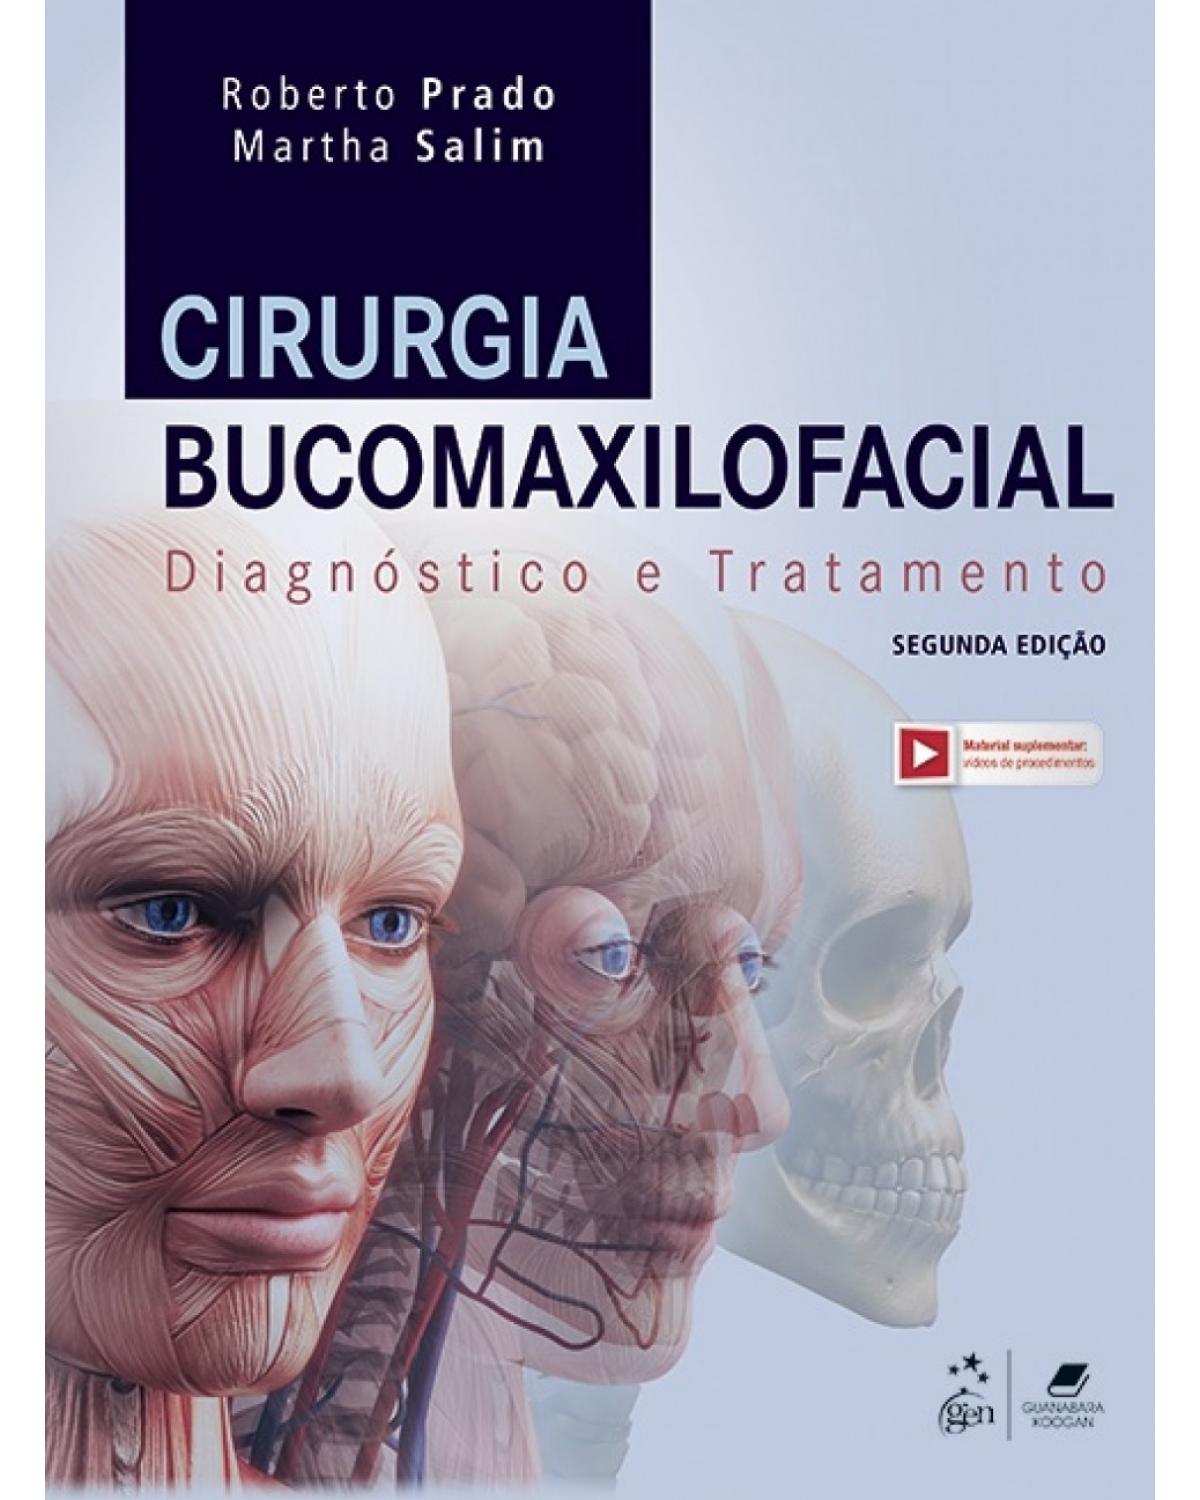 Cirurgia bucomaxilofacial - diagnóstico e tratamento - 2ª Edição | 2018